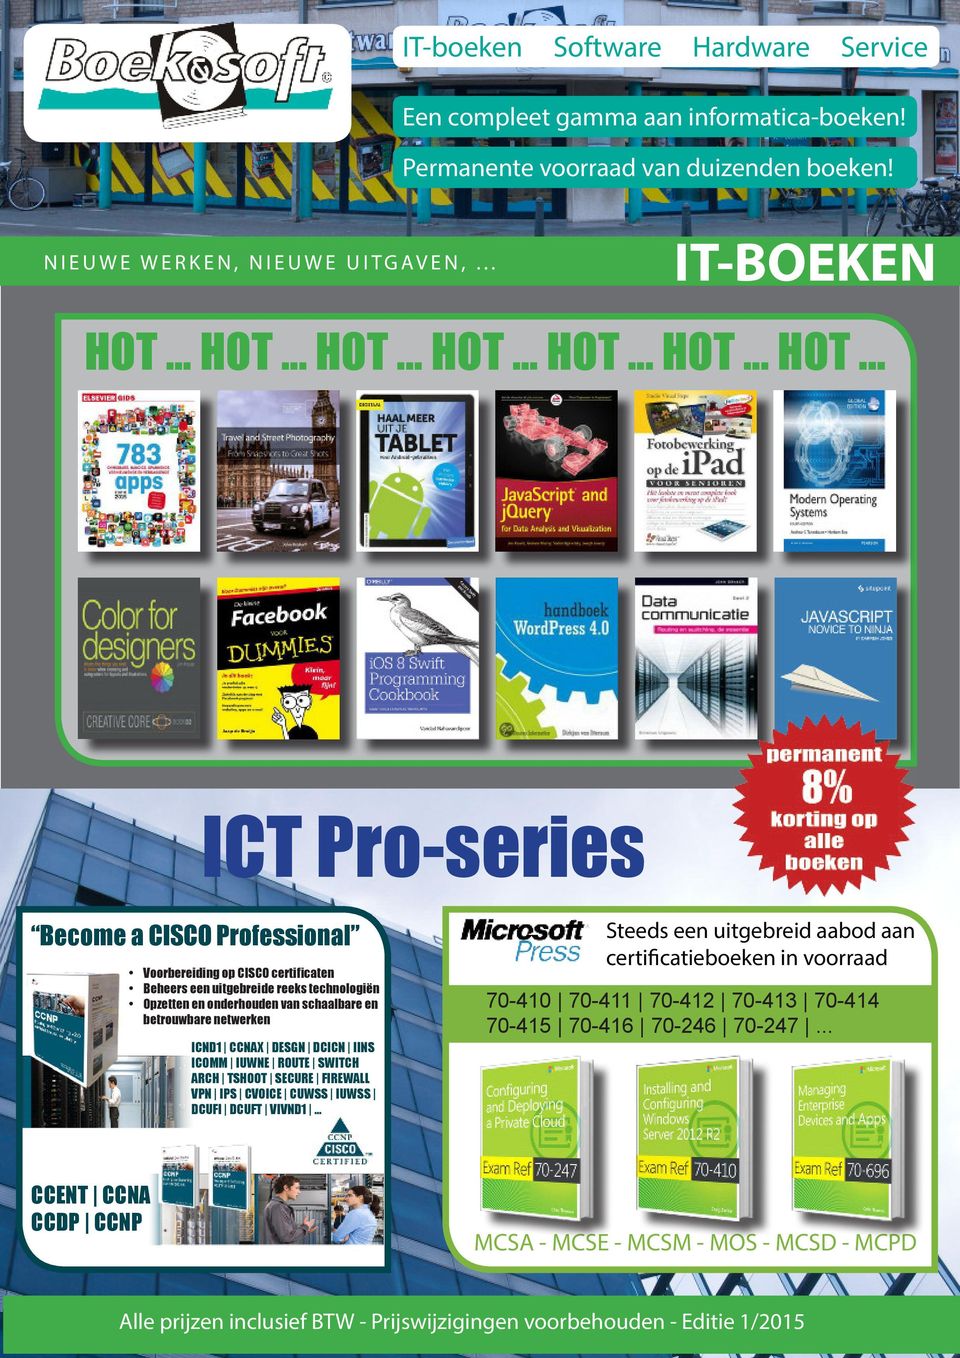 .. ICT Pro-series Become a CISCO Professional Voorbereiding op CISCO certi caten Beheers een uitgebreide reeks technologiën Opzetten en onderhouden van schaalbare en betrouwbare netwerken ICND1 CCNAX